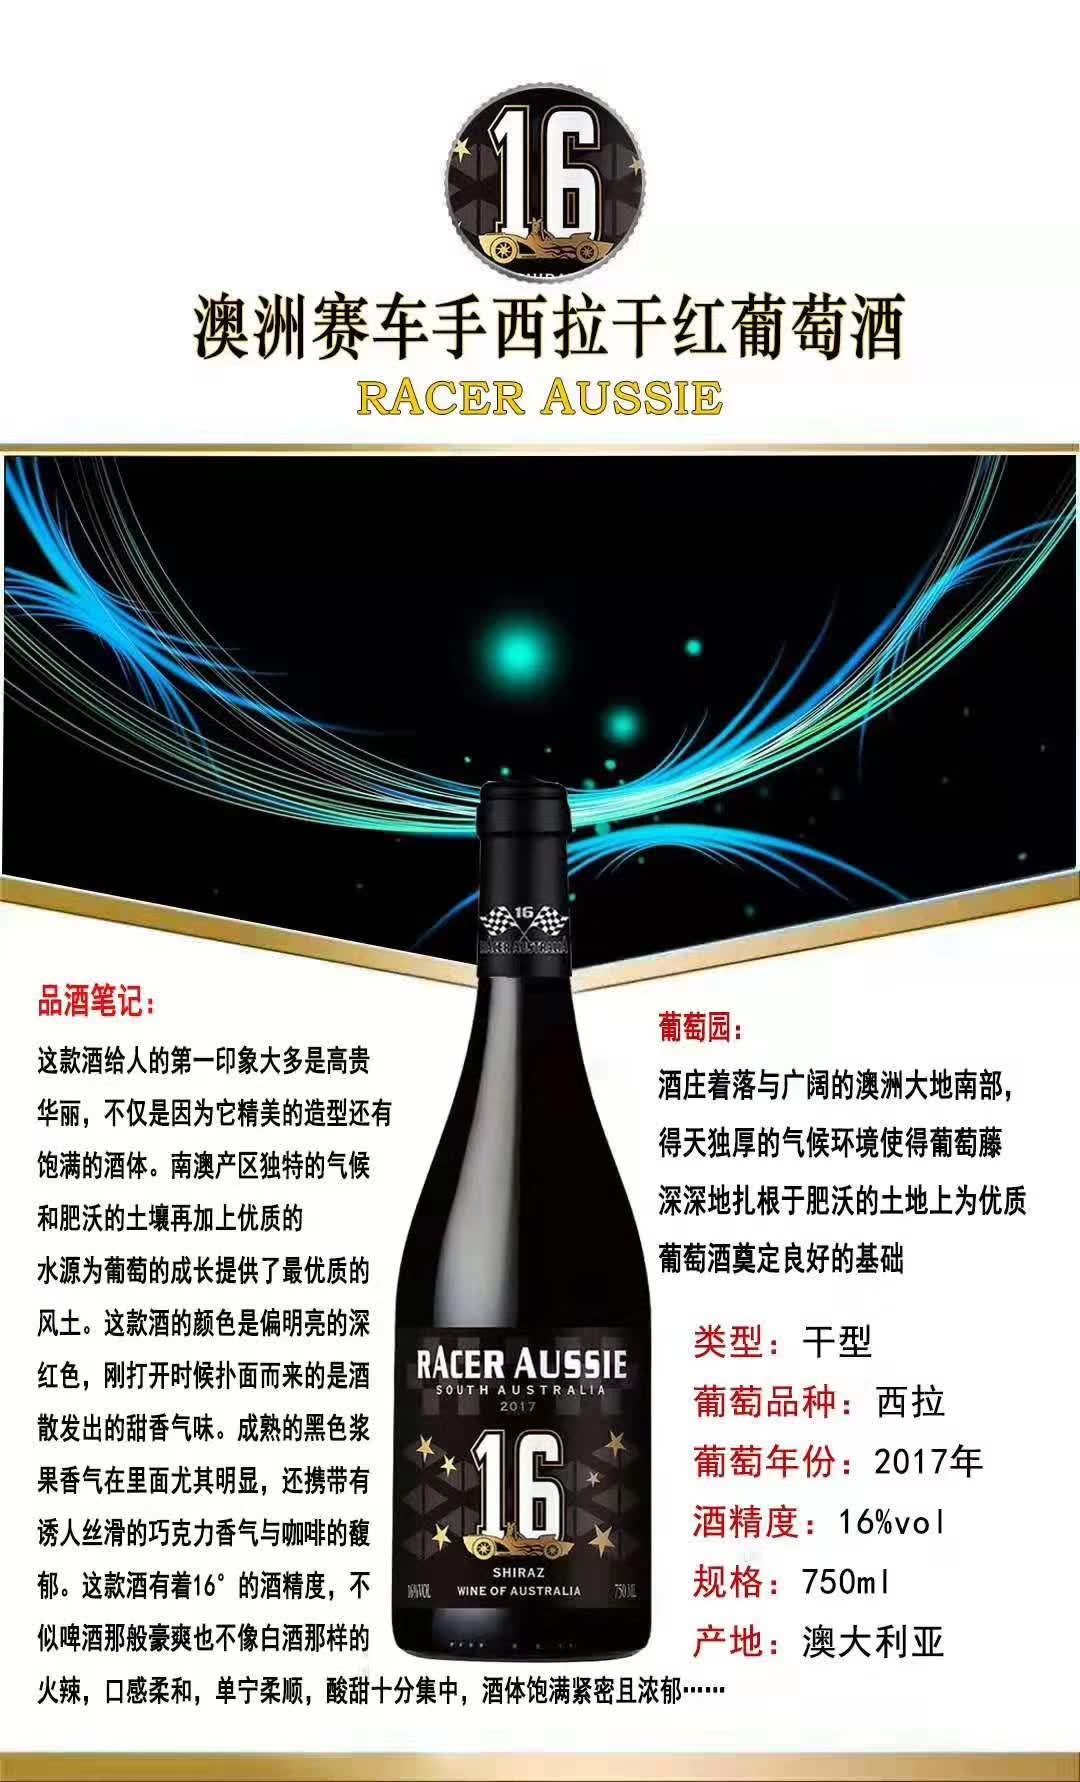 上海万耀贸易赛车手南澳州原装原瓶进口红酒